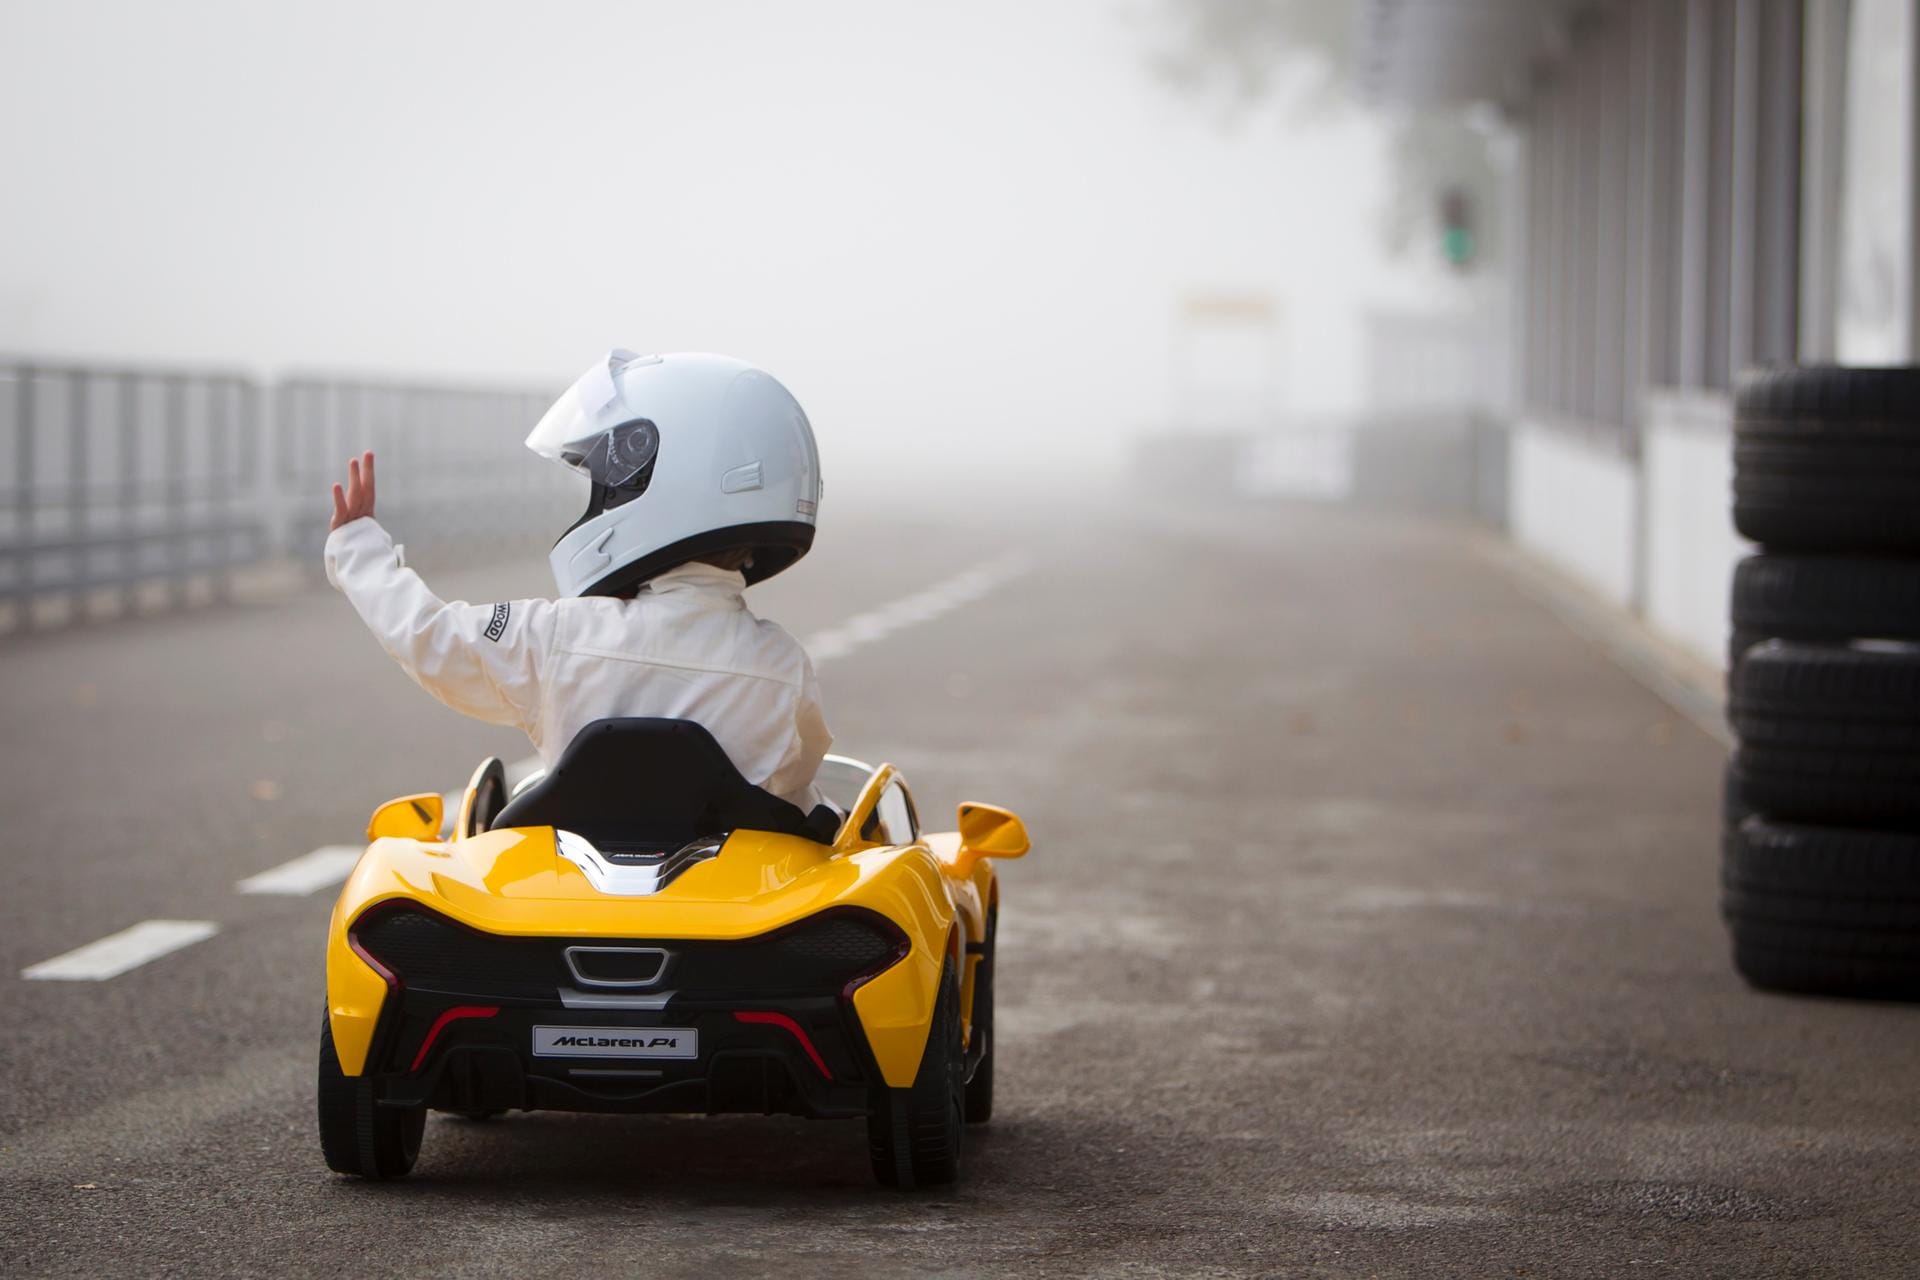 Den potenziellen Piloten, Kinder bis 6 Jahre, dürfte das McLaren P1 Tretauto einen Heidenspaß bereiten.